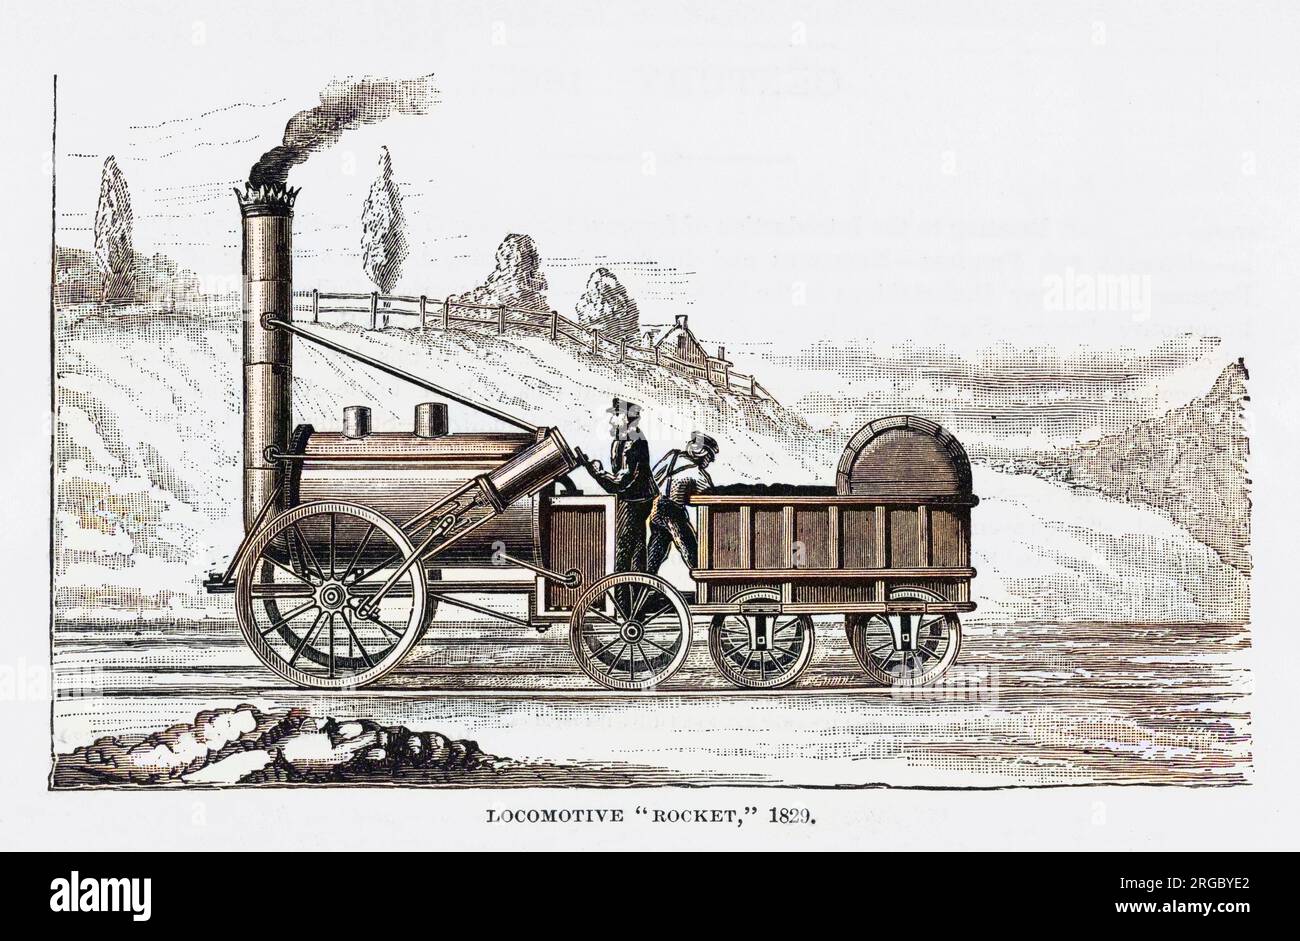 La locomotive de George Stephenson, The Rocket, a remporté un prix décerné par la Liverpool and Manchester Railway Company. Banque D'Images